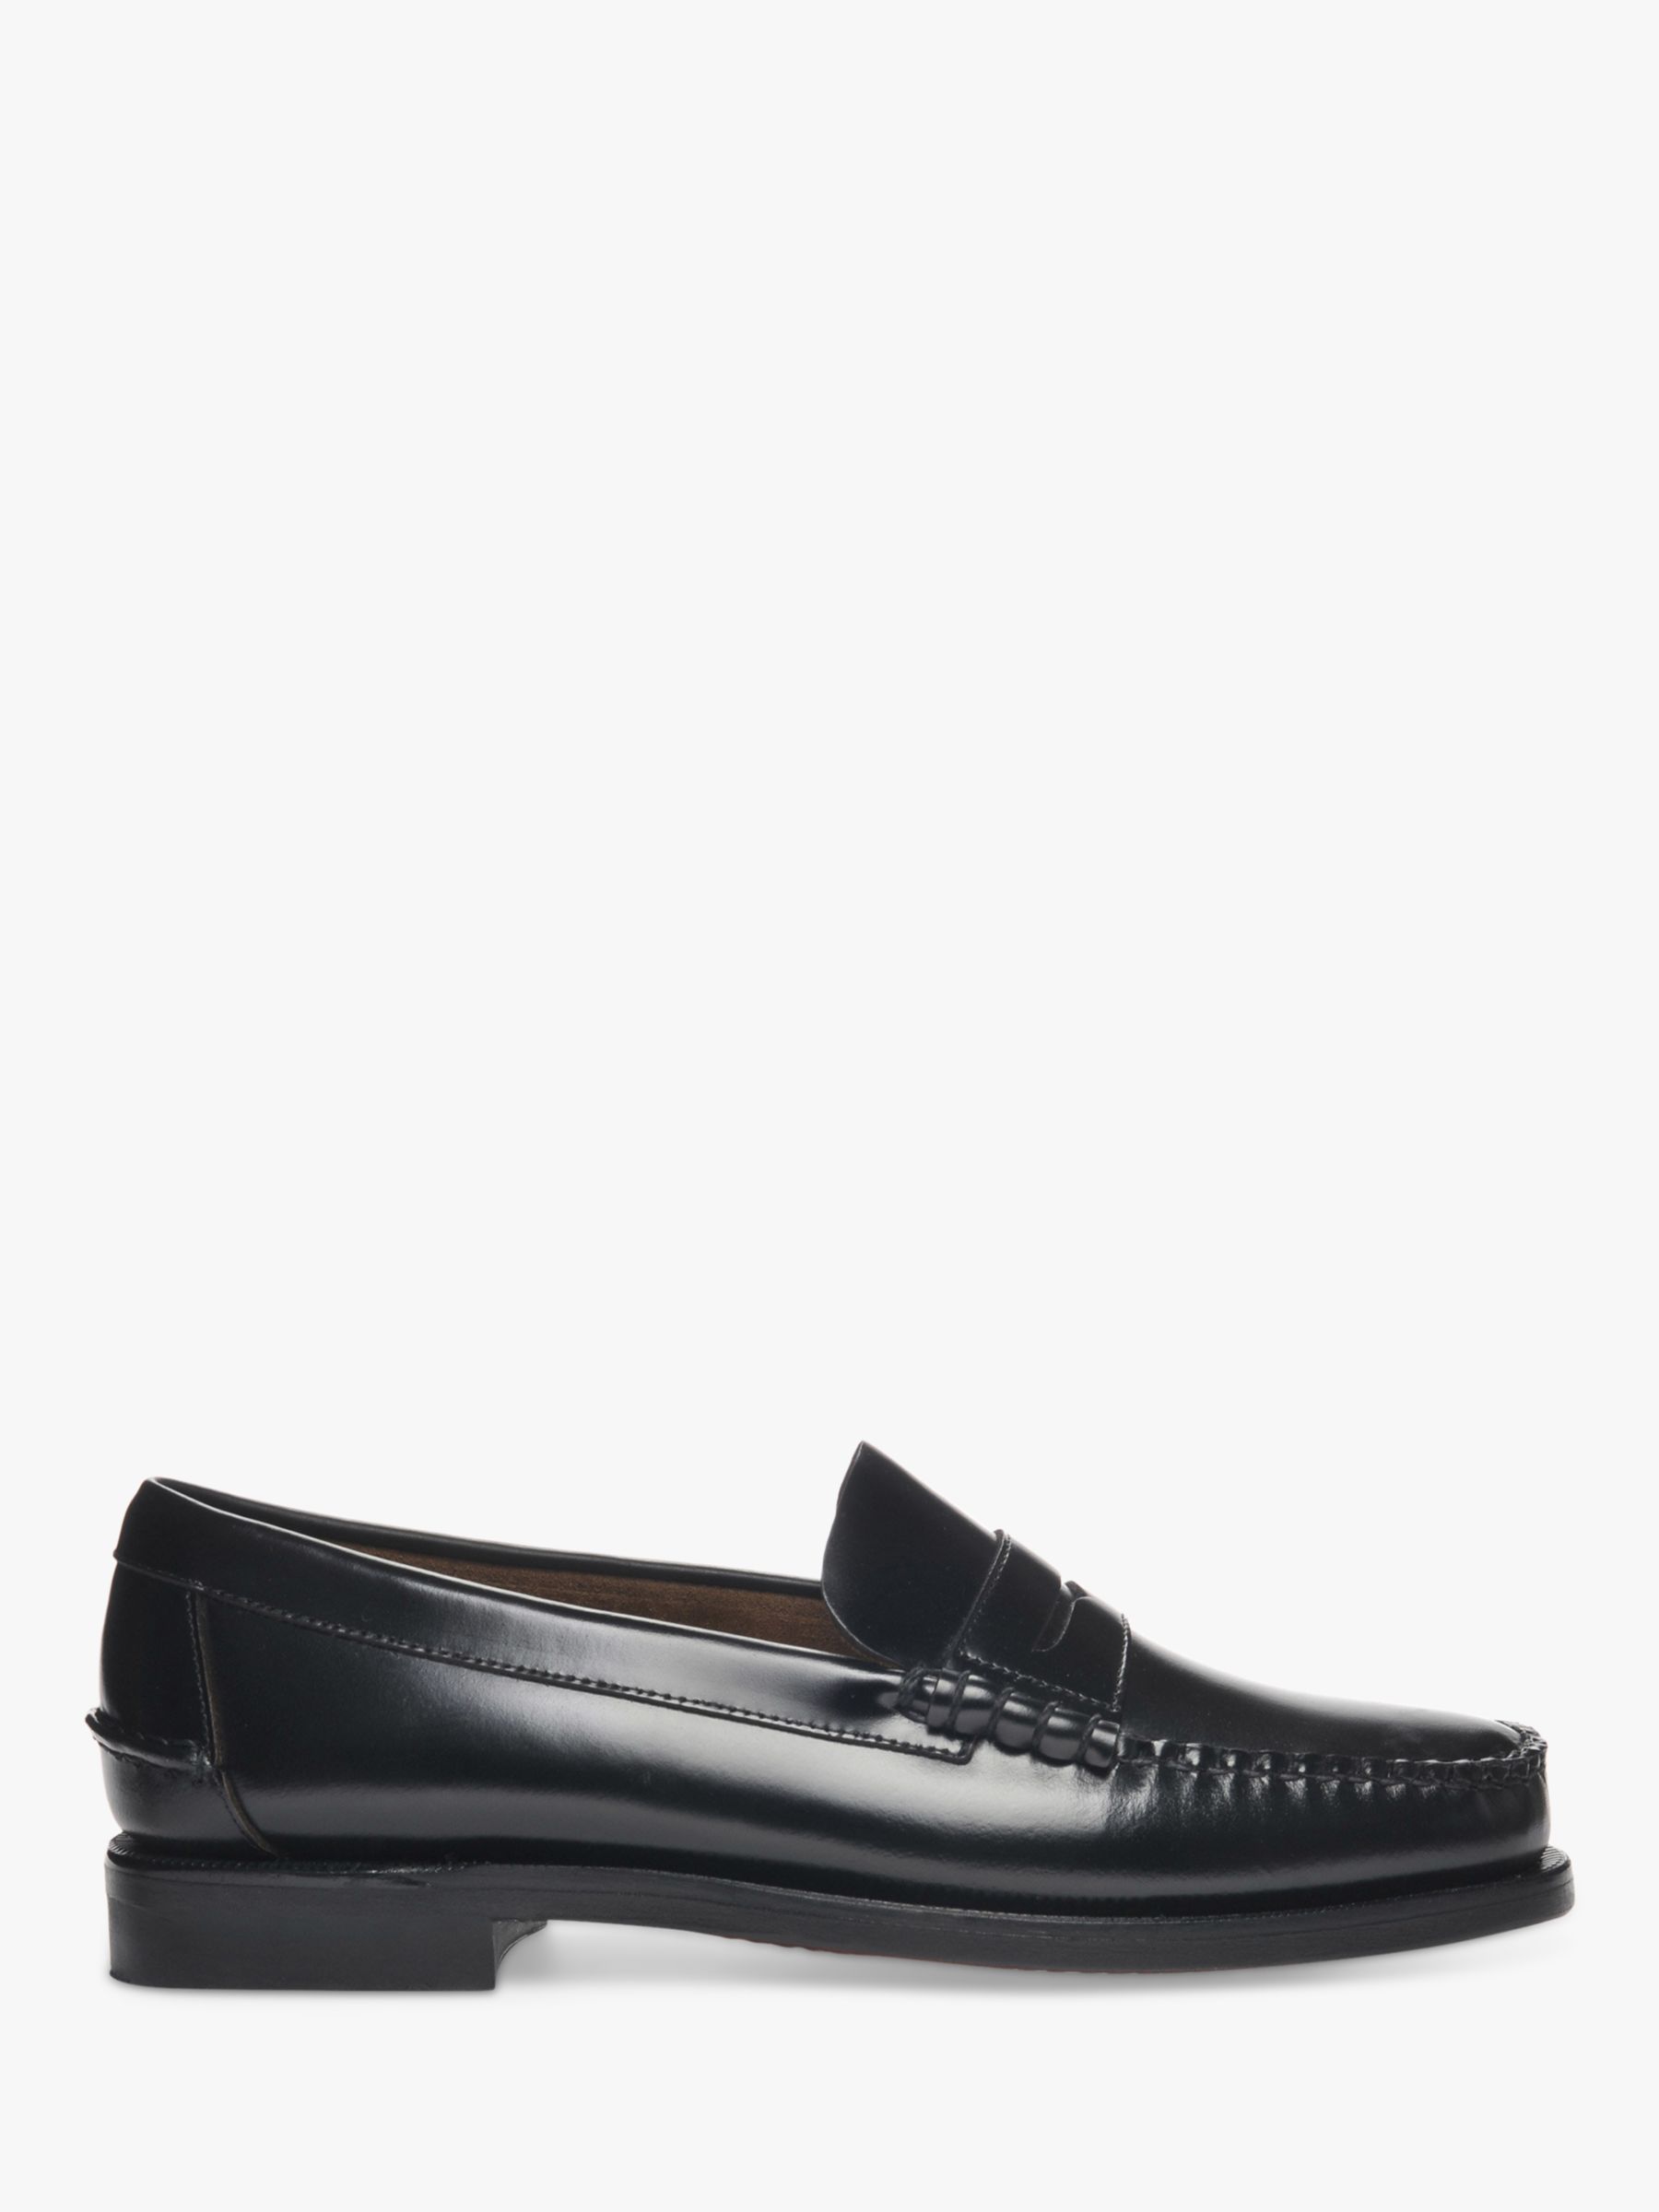 Sebago Classic Dan Leather Loafers, Black at John Lewis & Partners